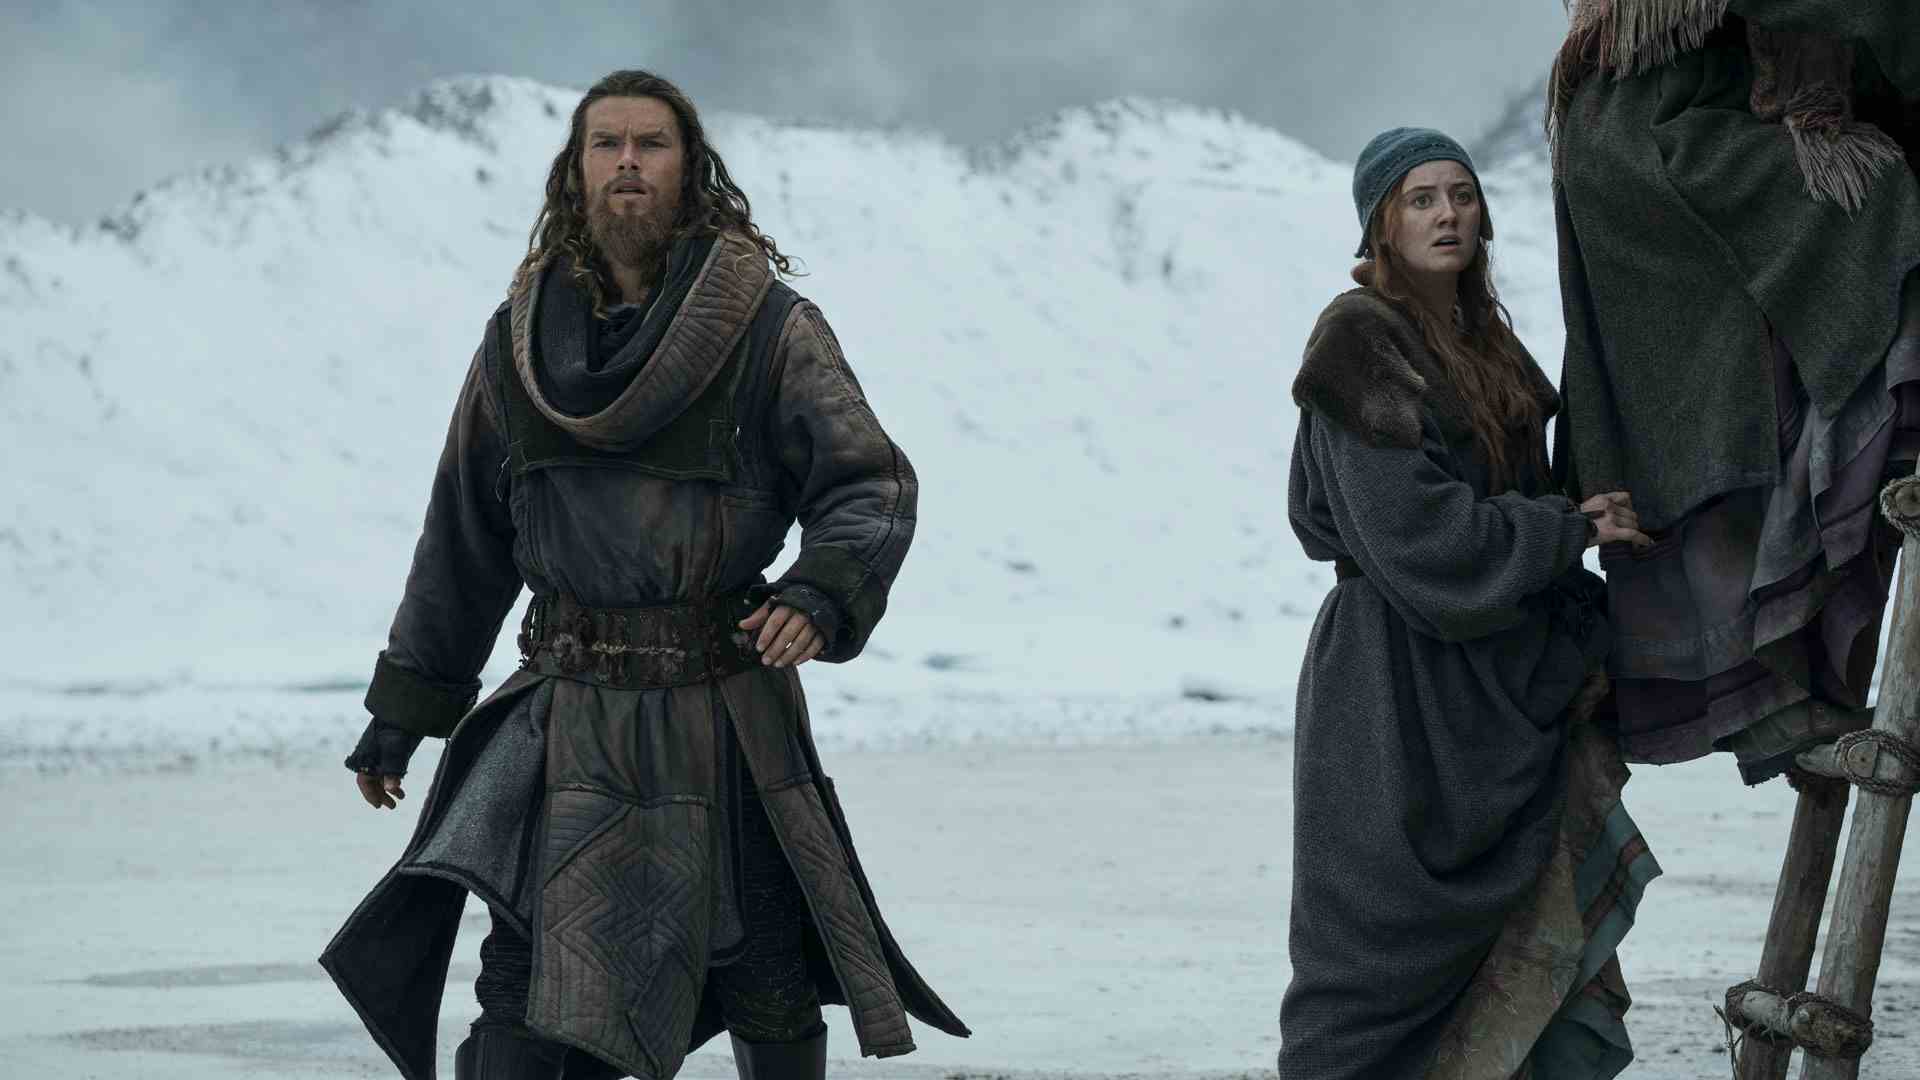 Leif, Vikings Valhalla 2. sezonda kamera dışında bir şey fark ederken endişeli görünüyor